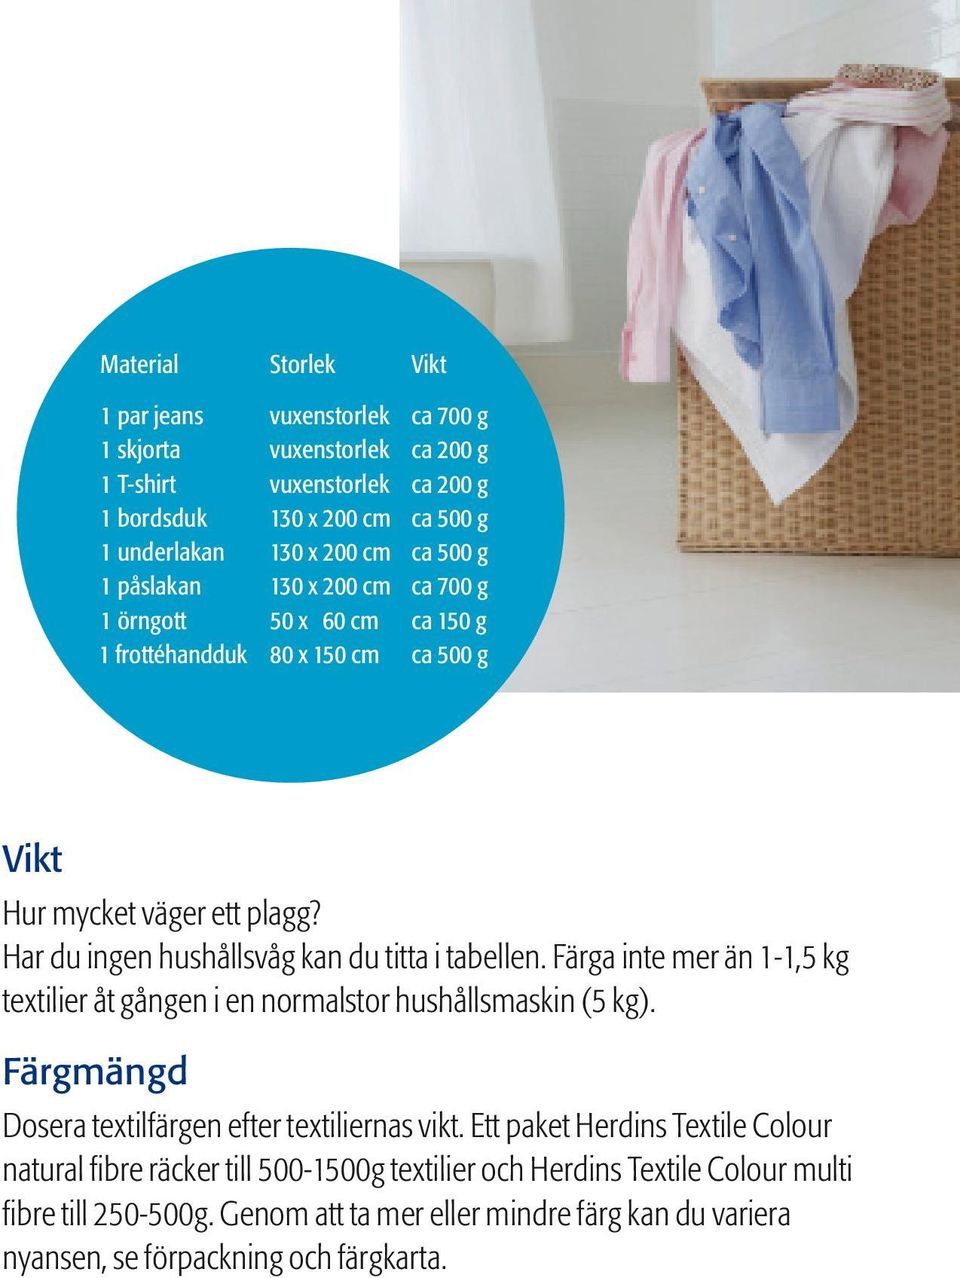 Har du ingen hushållsvåg kan du titta i tabellen. Färga inte mer än 1-1,5 kg textilier åt gången i en normalstor hushållsmaskin (5 kg).